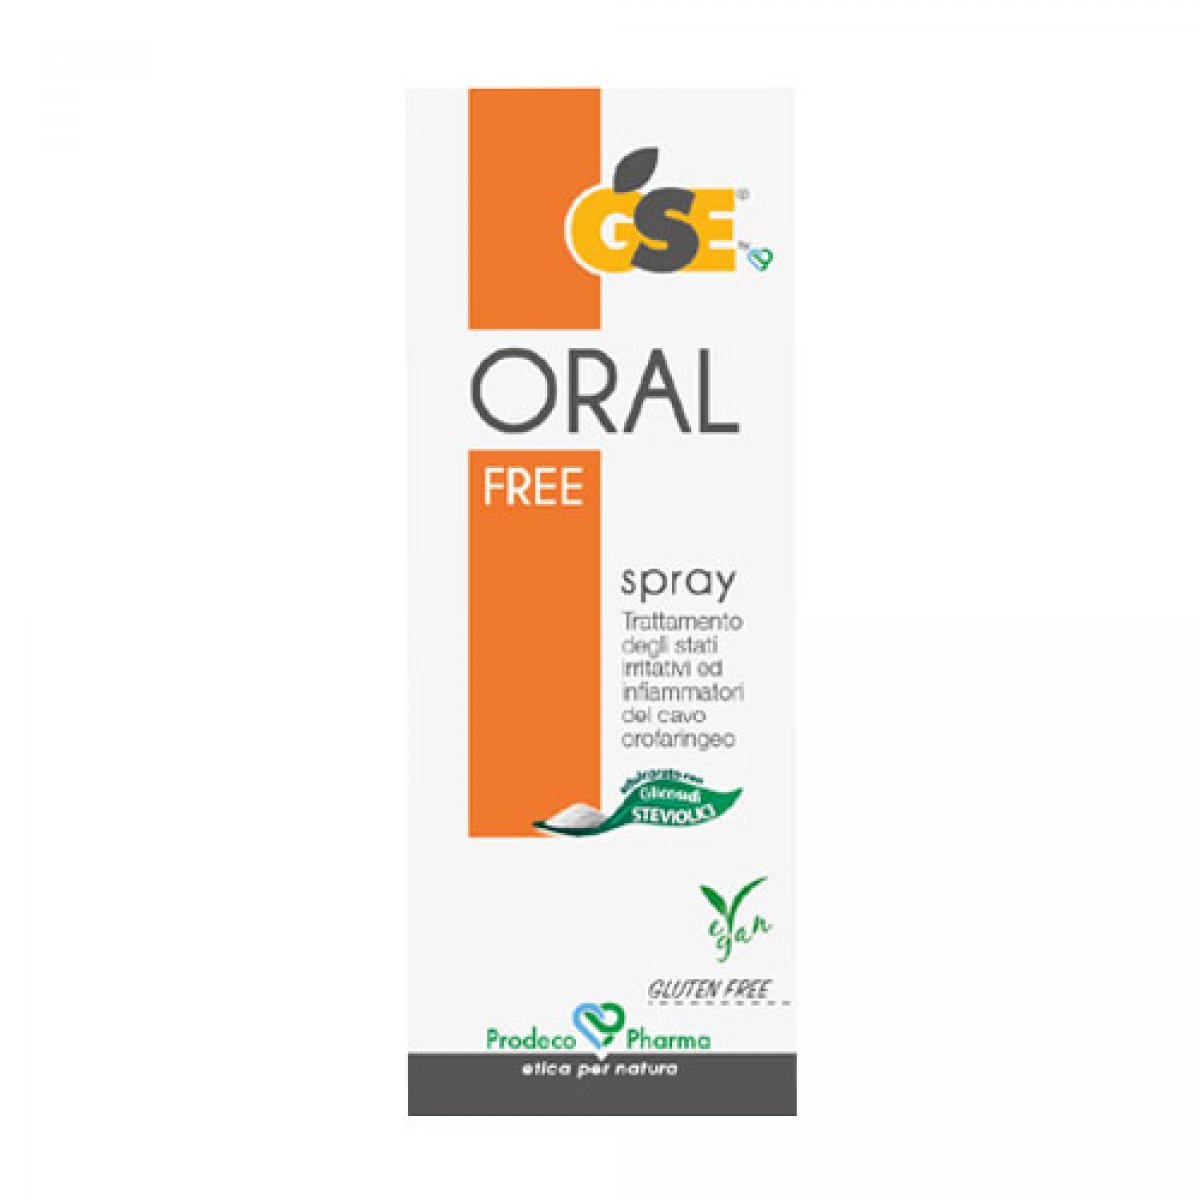 GSE ORAL FREE Spray - Prodeco Pharma Soluzione per uso orale che protegge dall’aggressione di agenti esterni ed esplica un’azione antinfiammatoria e lenitiva. Confezione: flacone da 30 ml in nebulizzatore ecologico con cannula orientabile.